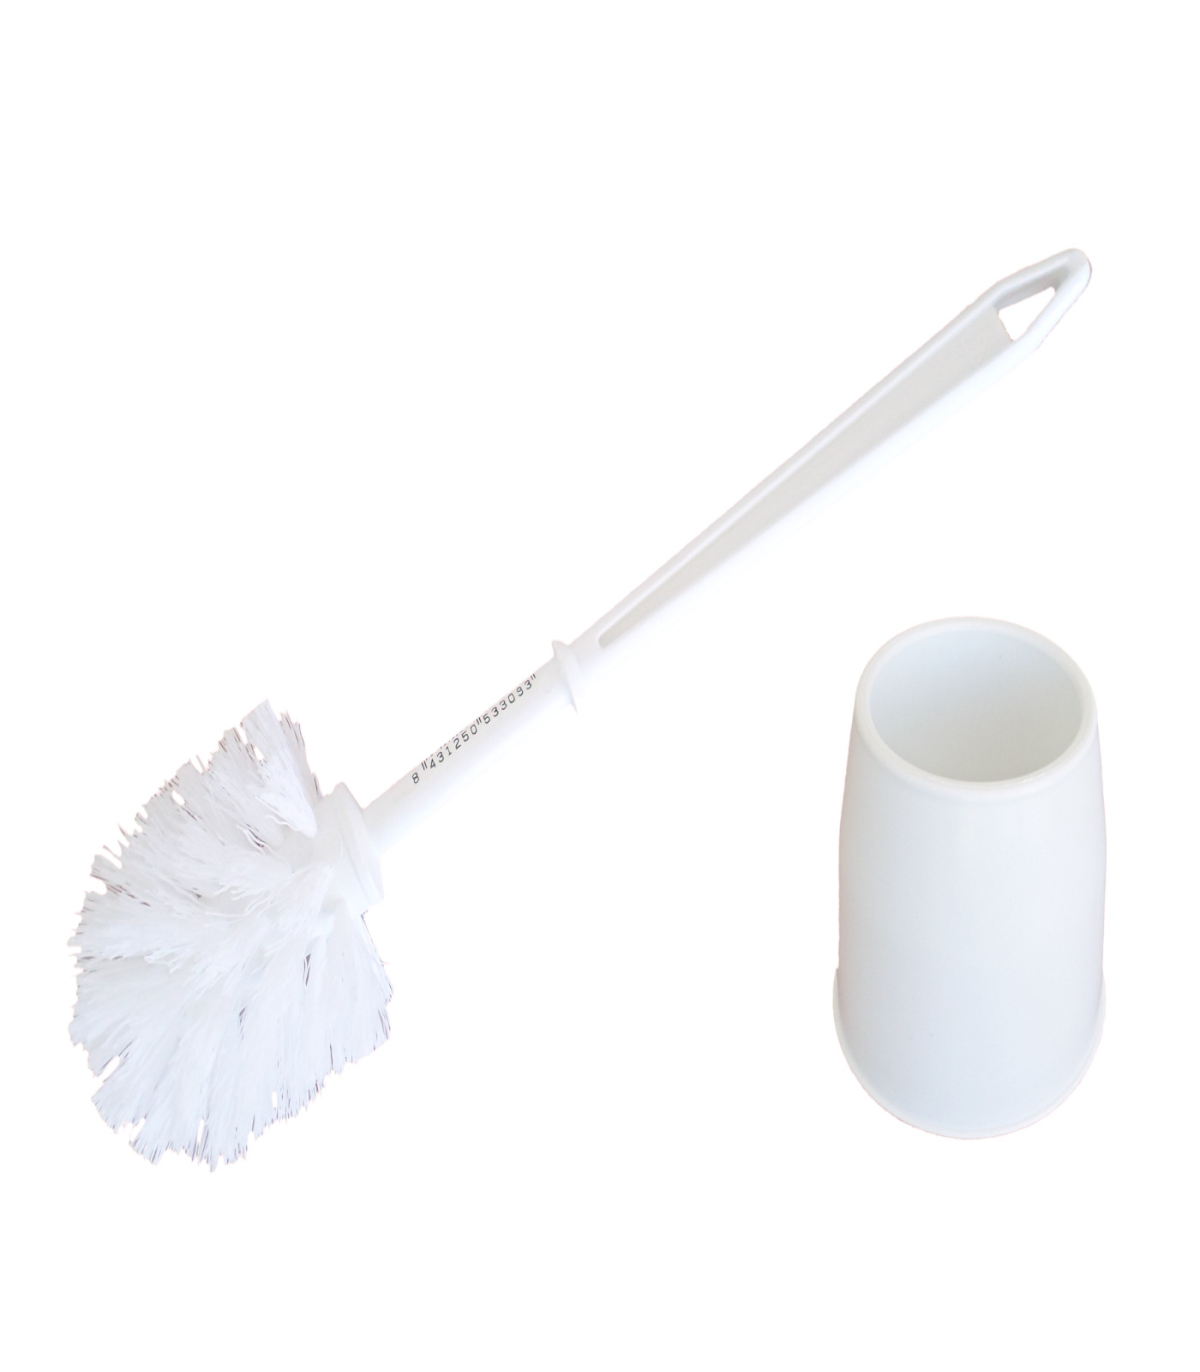 Pamex - Escobillero completo plástico, color blanco 38,5 x 13 cm